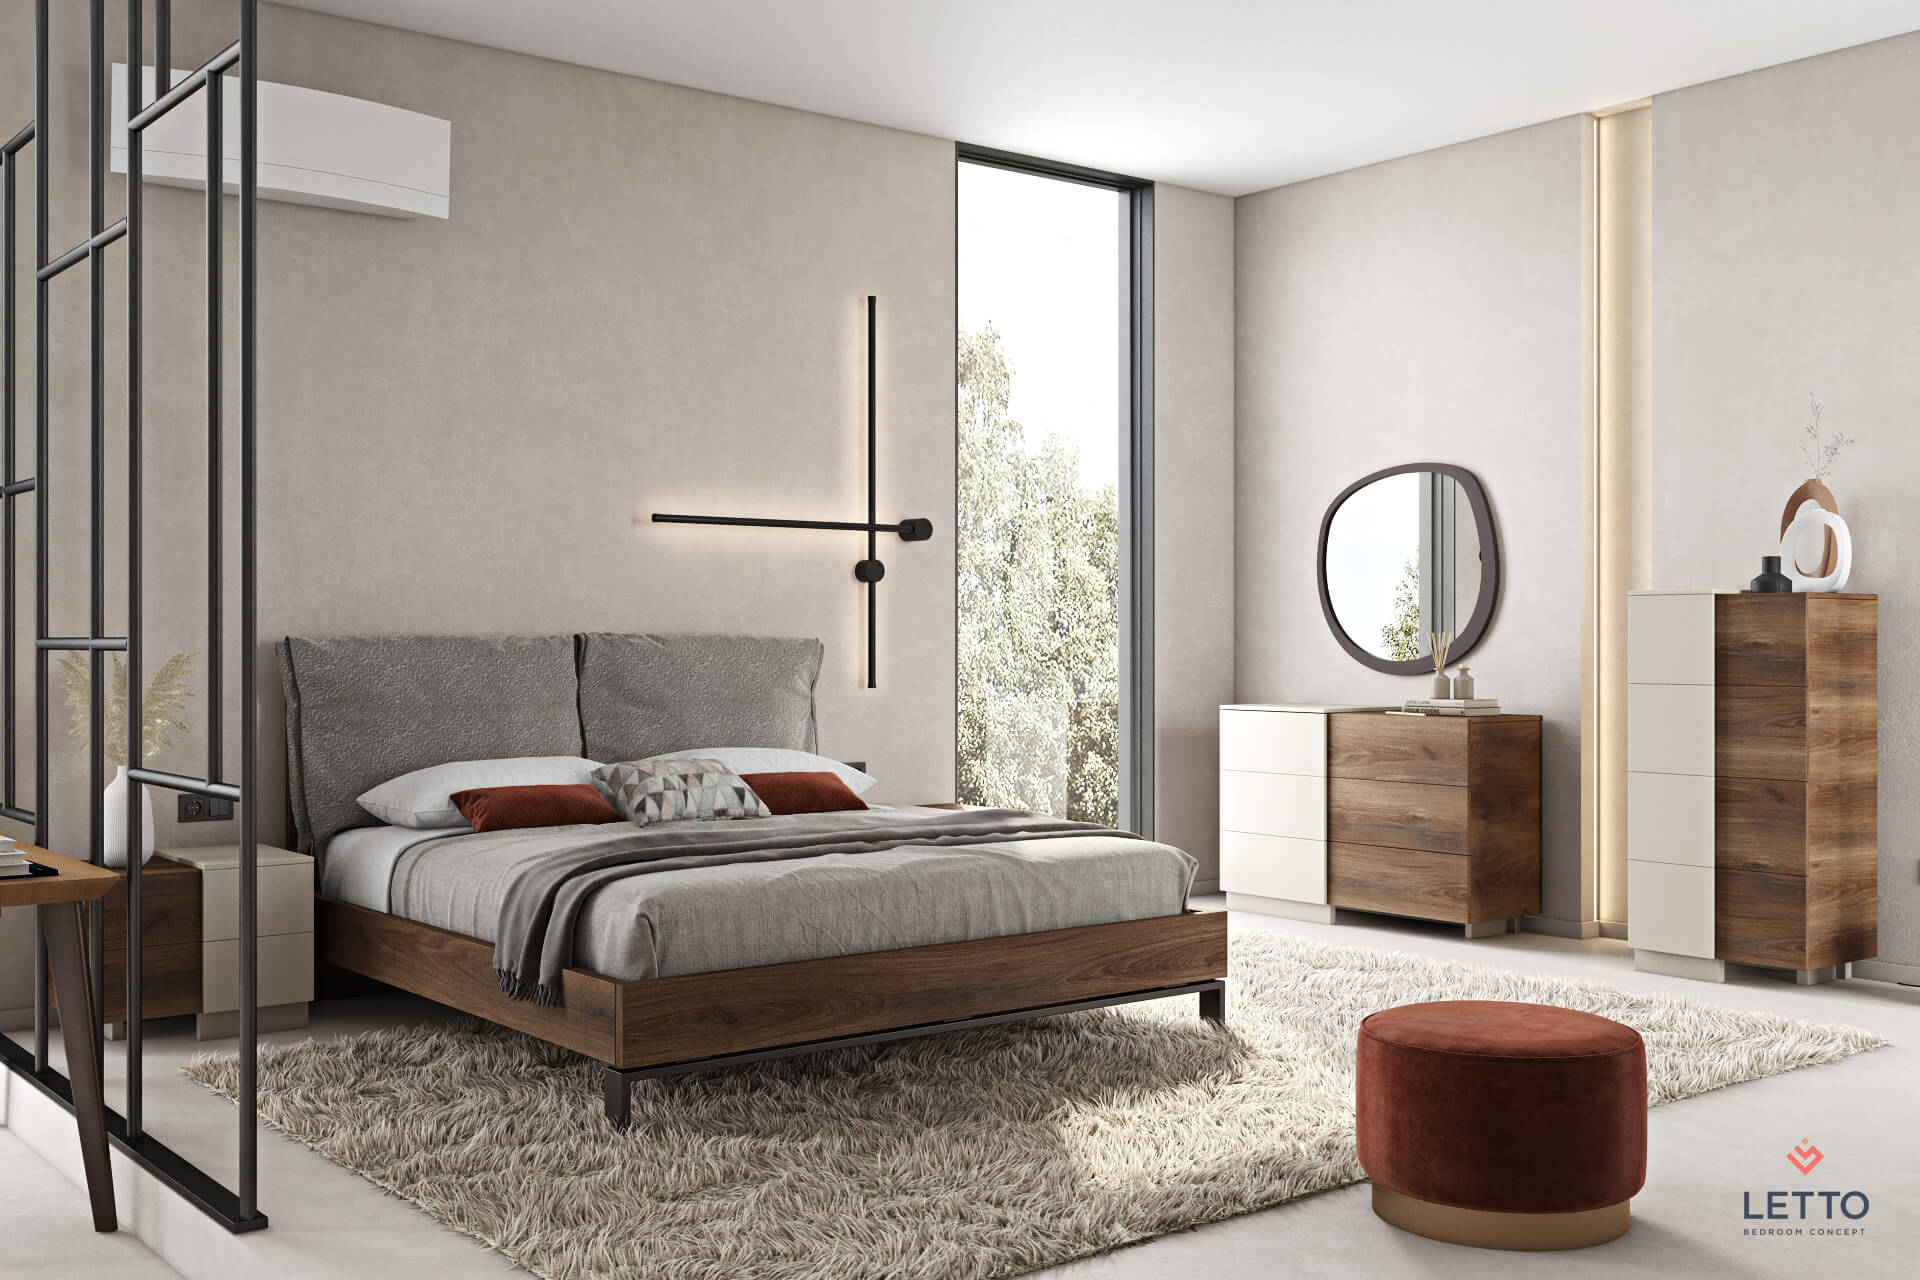 Κρεβάτι ξύλινο μοντέρνο από την συλλογή nabuk της εταιρείας κατασκευής επίπλων Letto